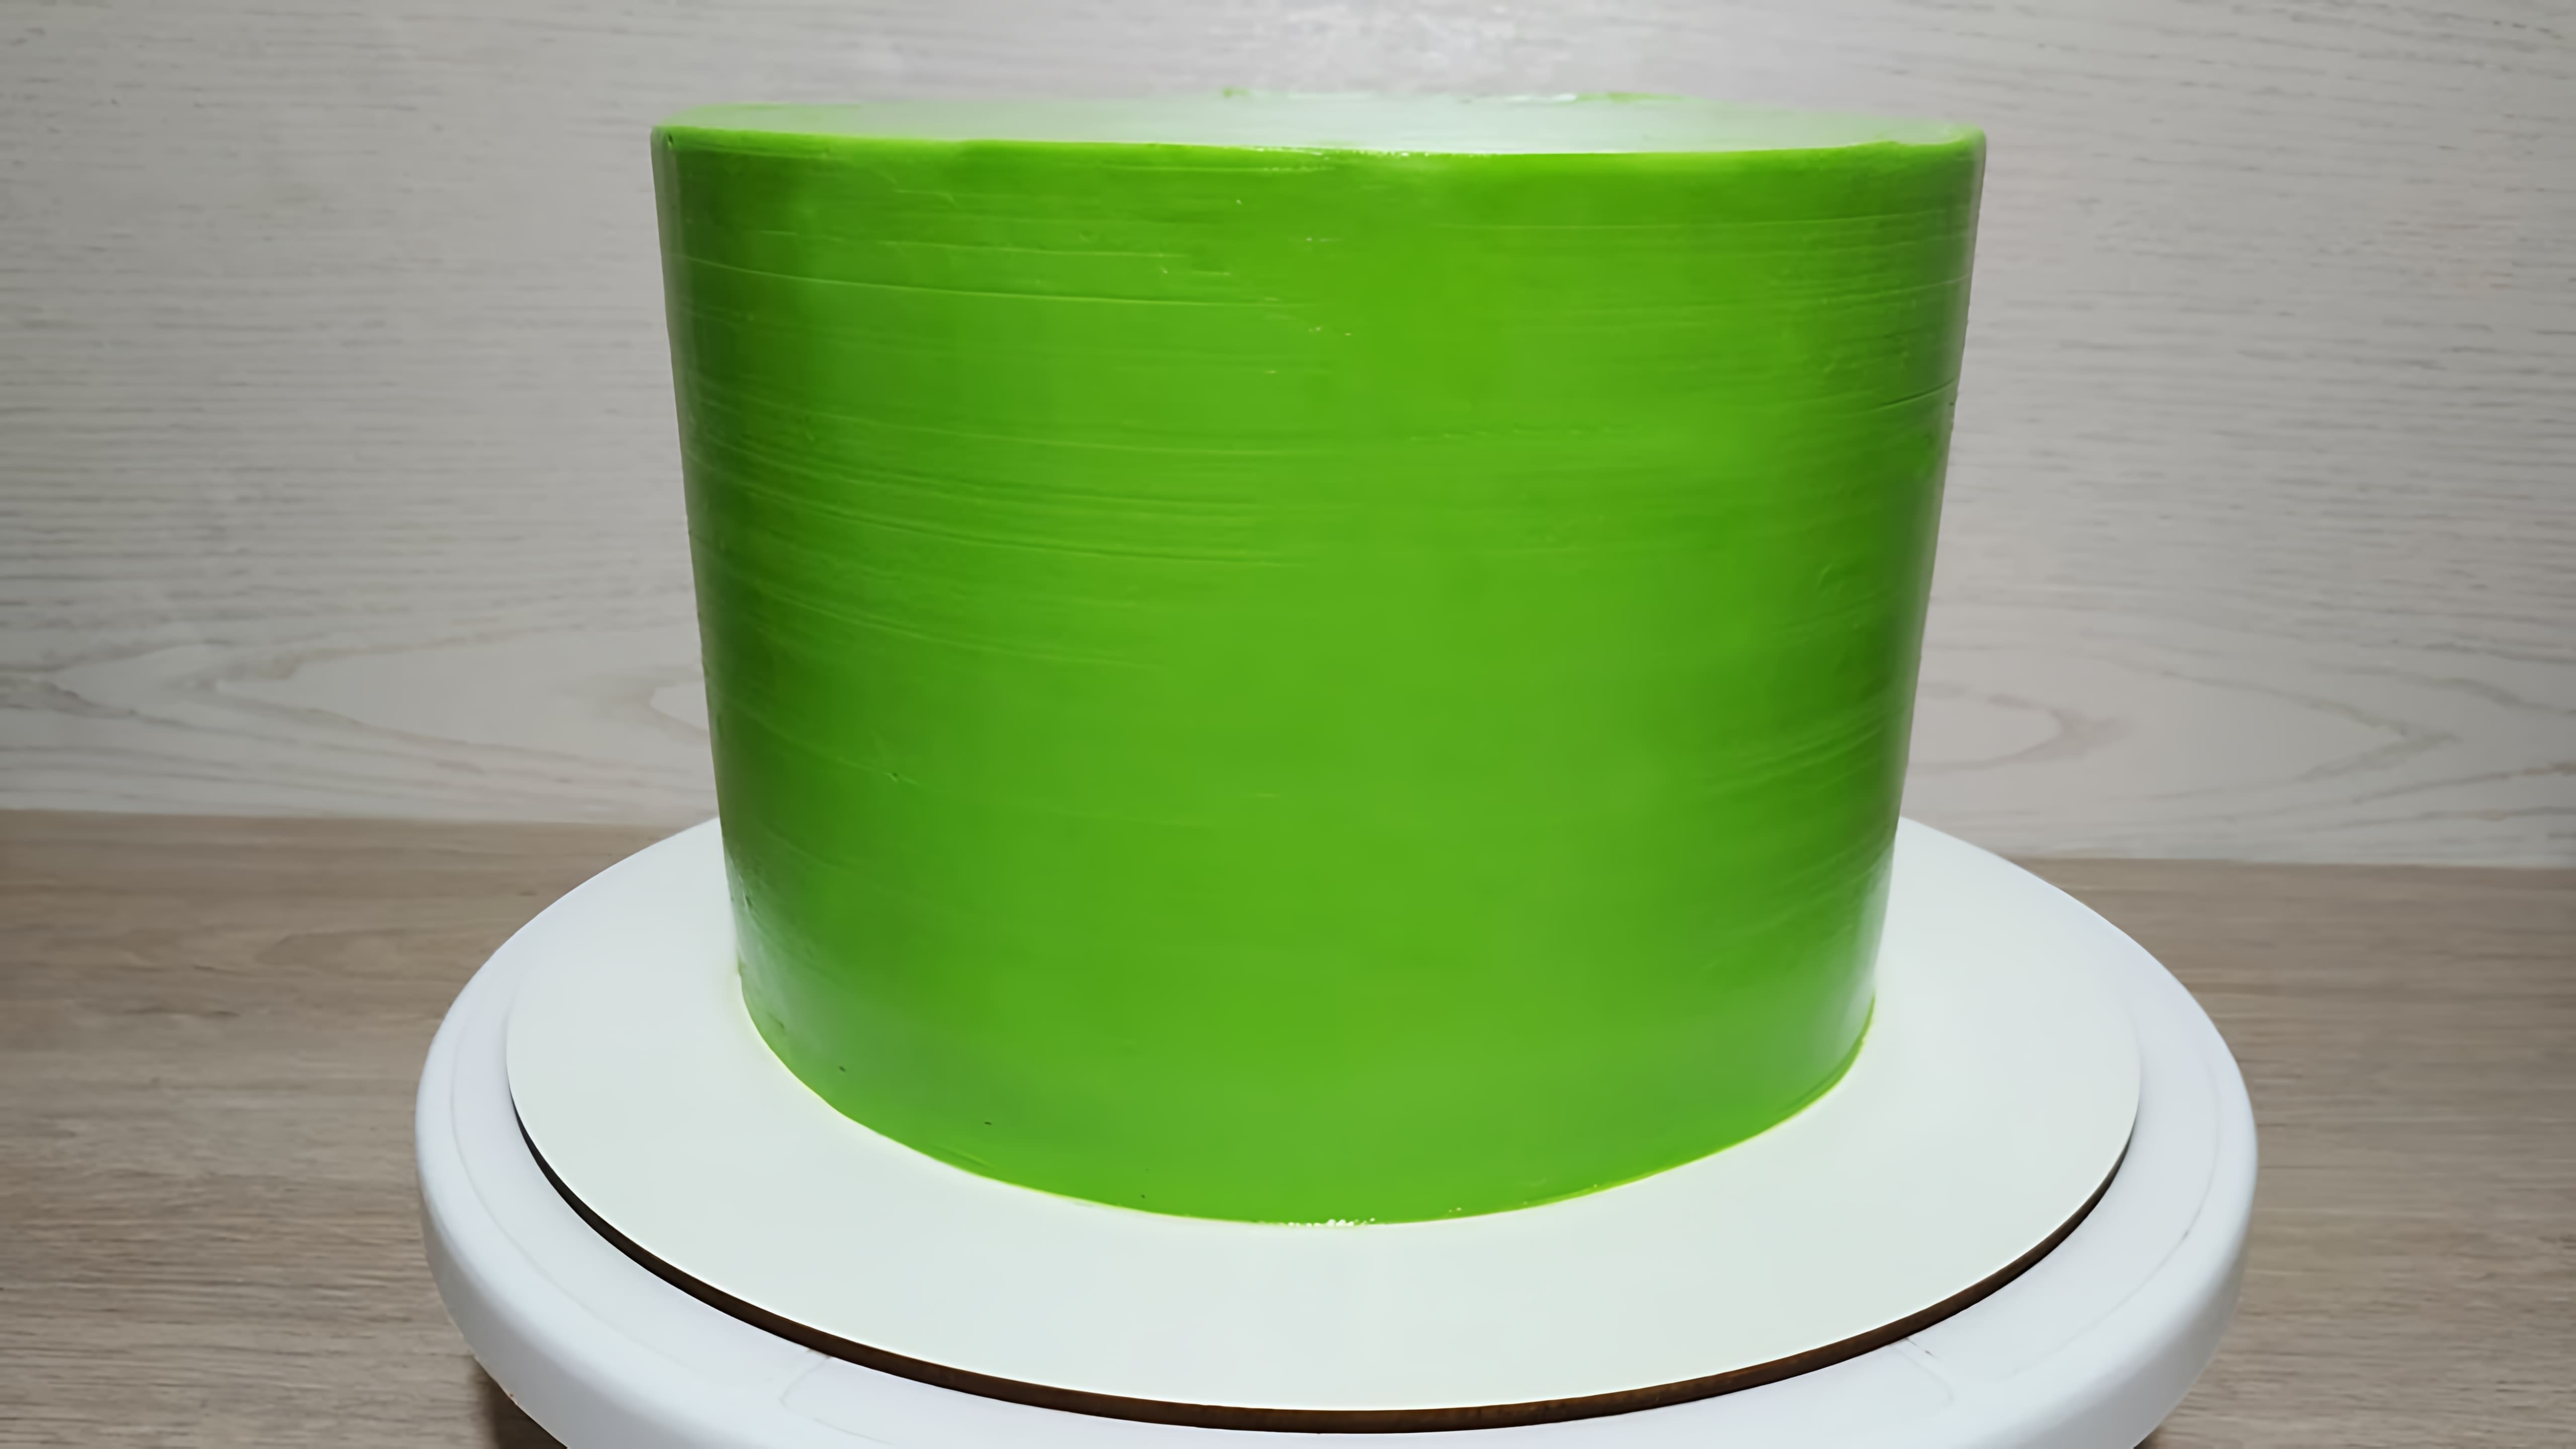 В этом видео демонстрируется рецепт крема для выравнивания торта на основе плавленных сырков